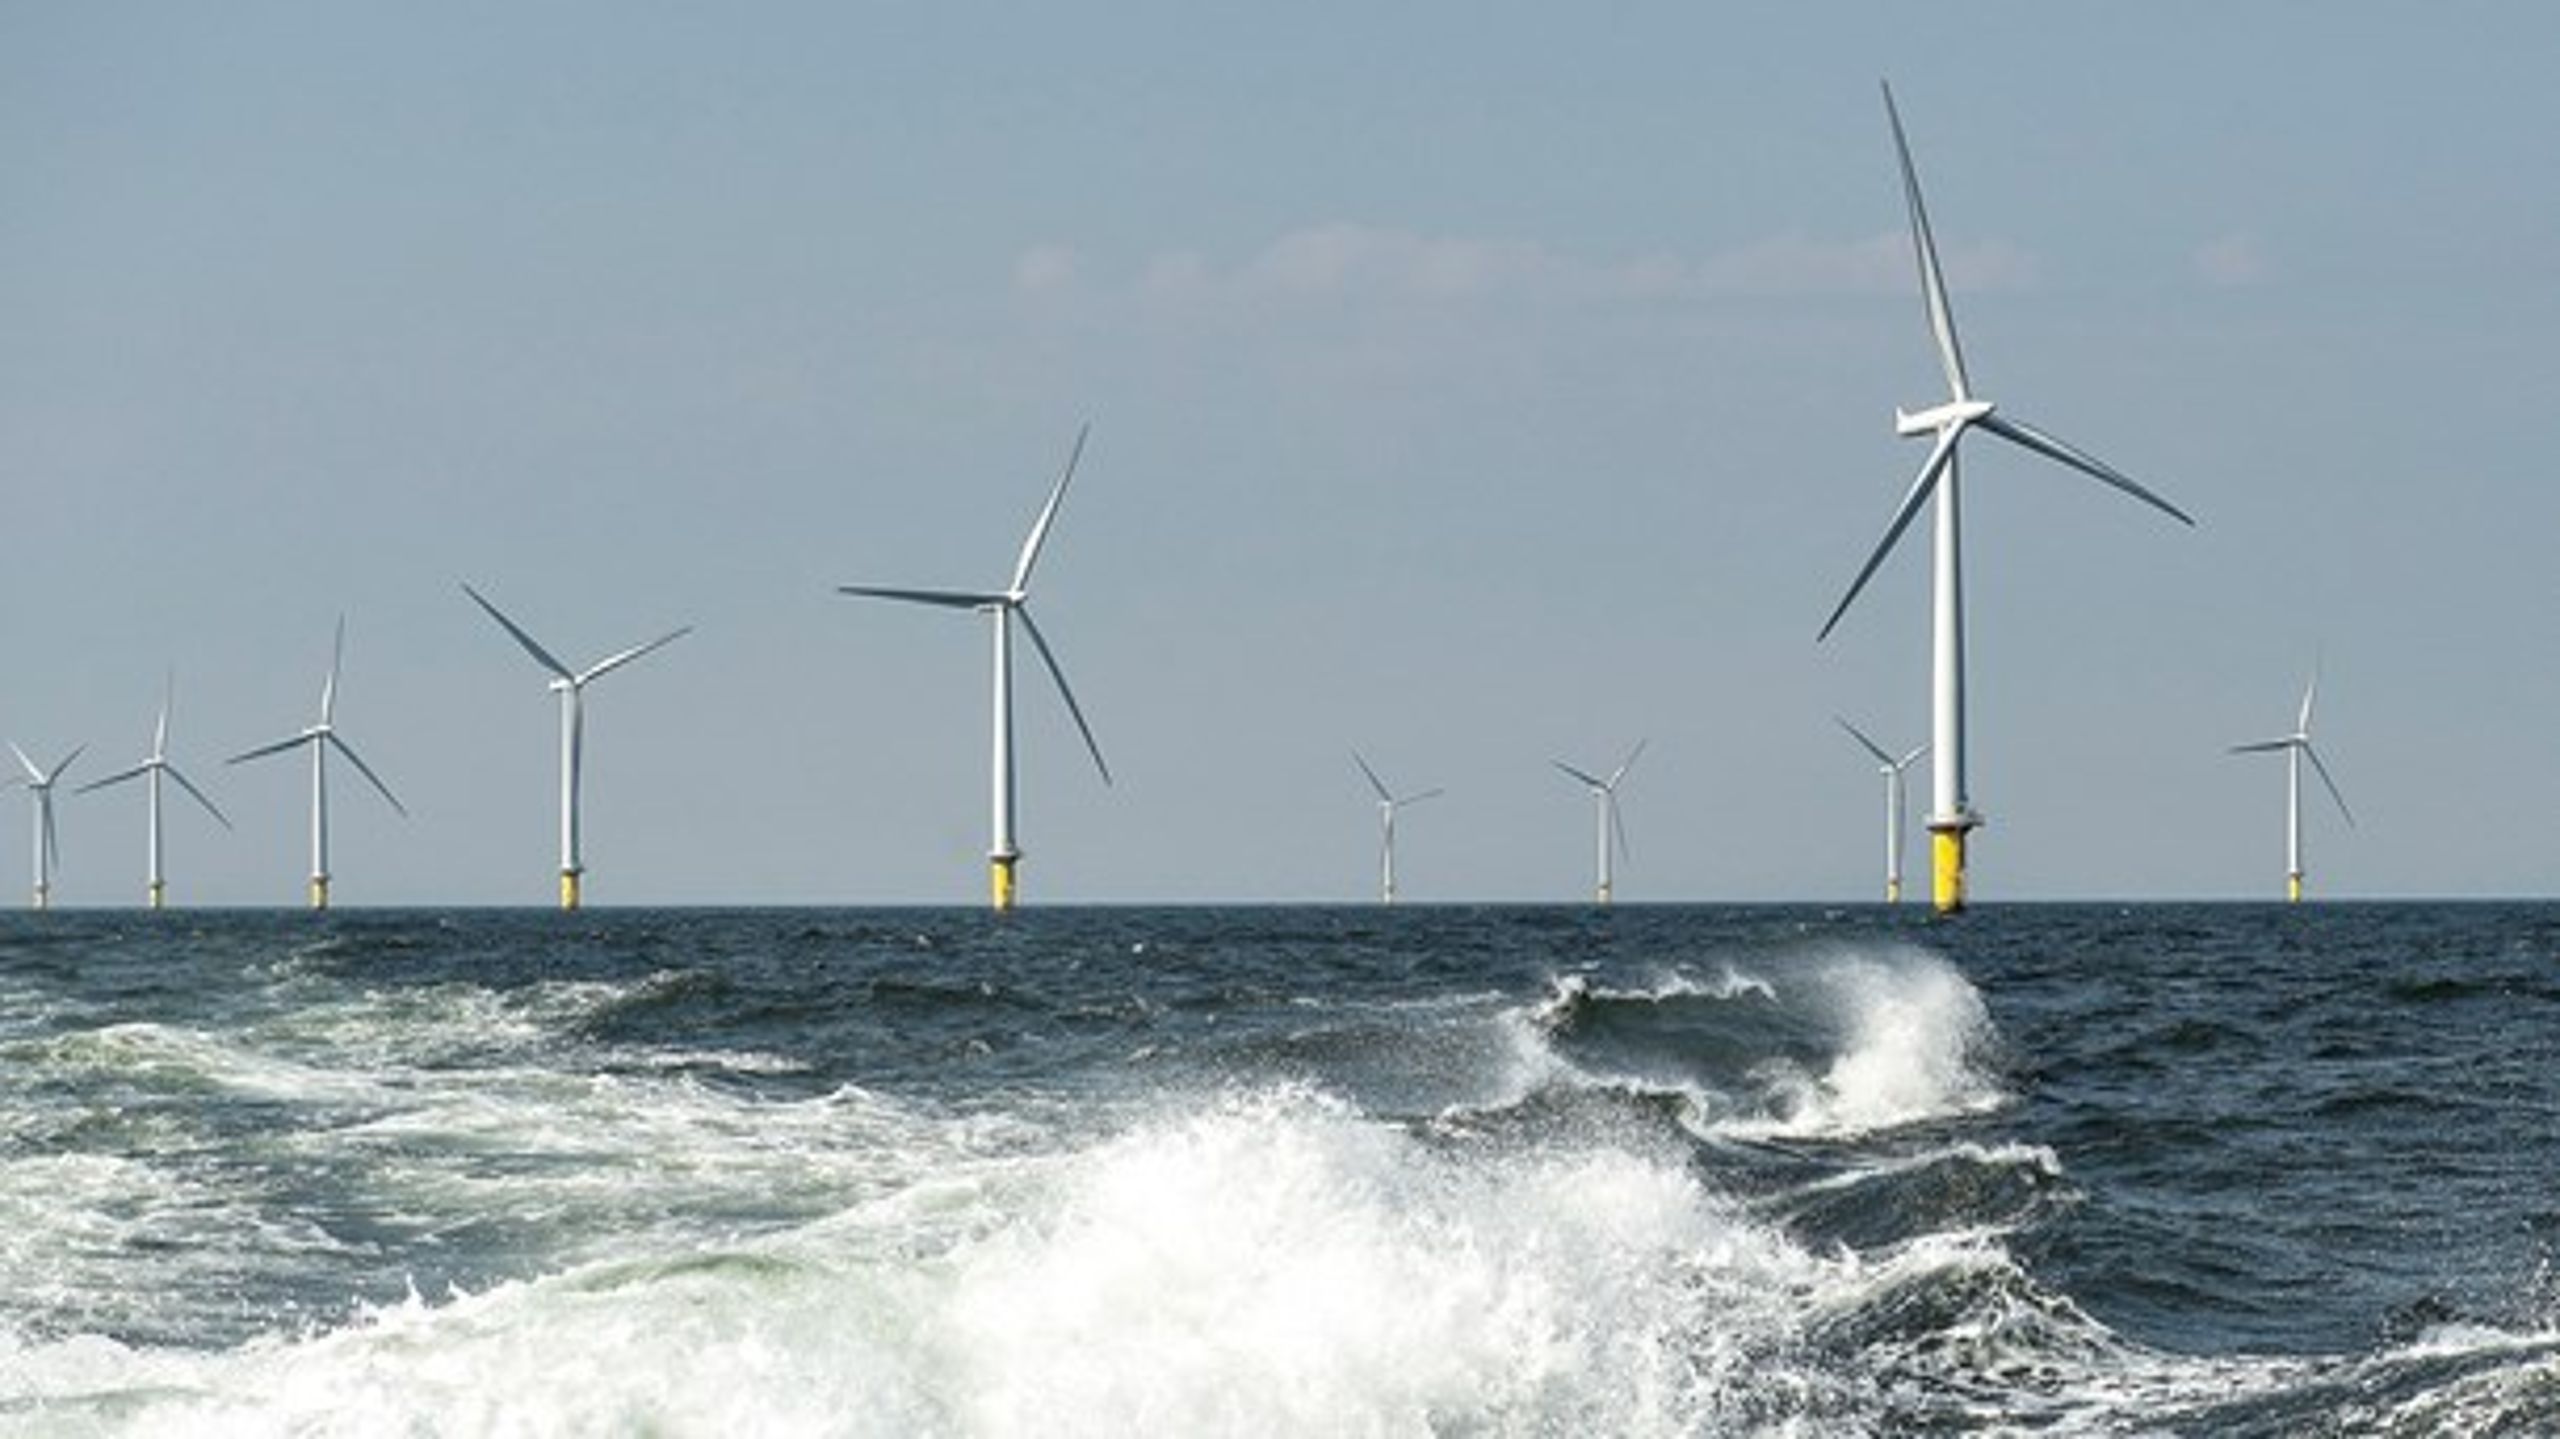 Vi skal altså investere i udbygning af havvind, el-transmissionsnettet og energi-øer i Nord- og Østersøen, skriver fire debattører.